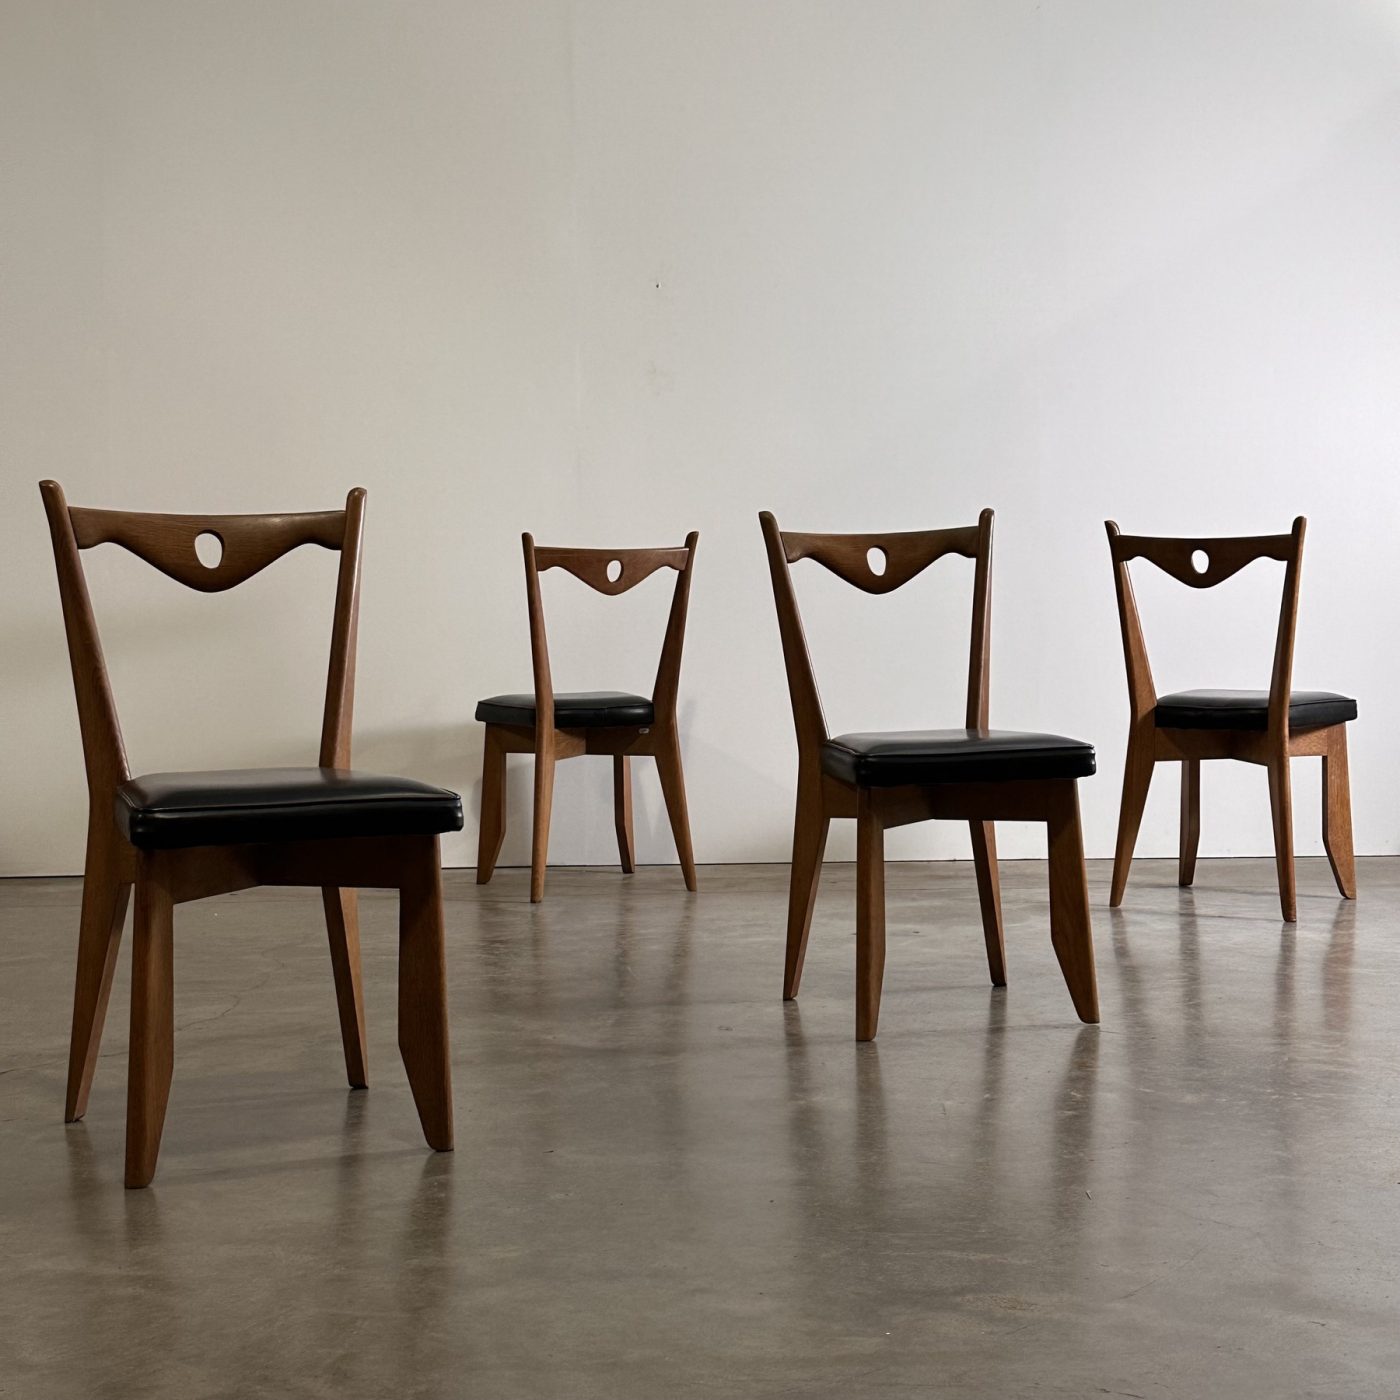 objet-vagabond-guillerme-chairs0003